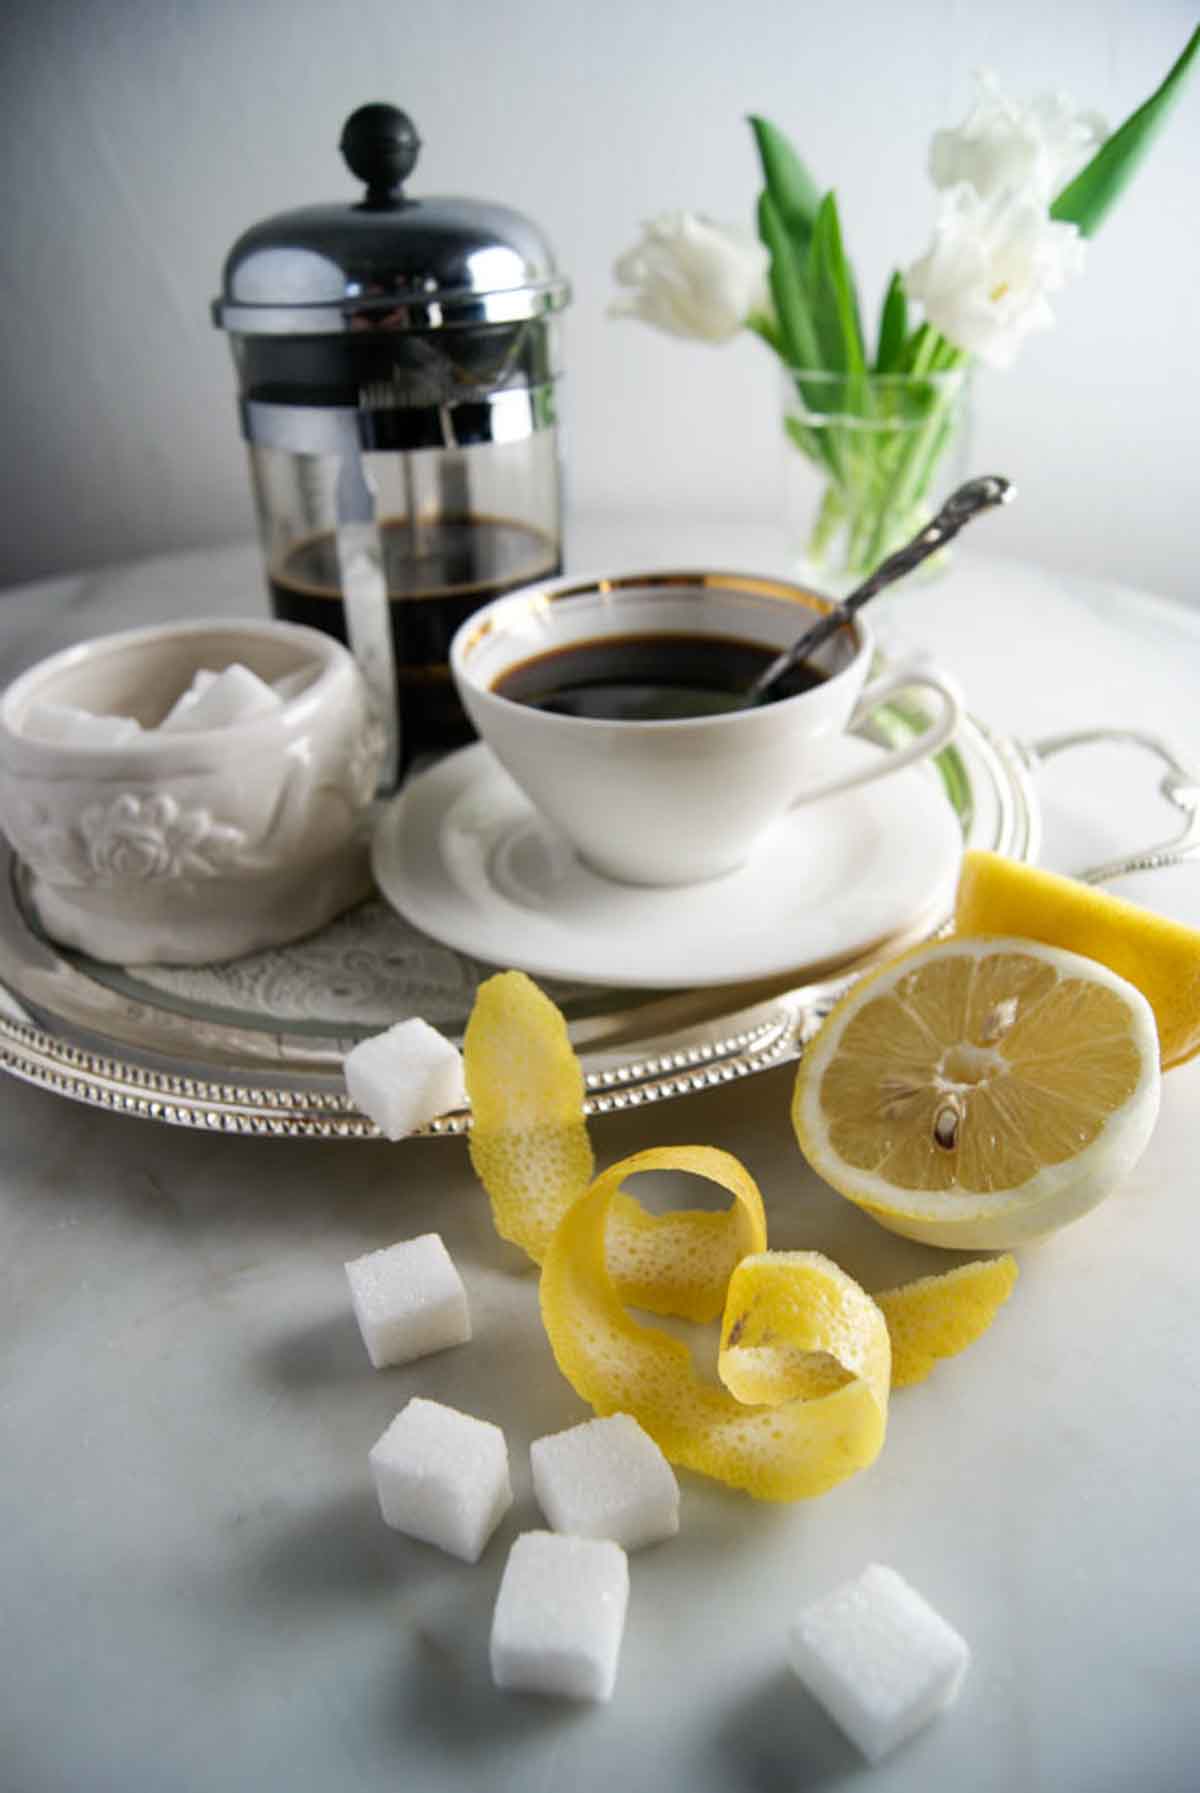 Katerkaffee mit Würfelzucker und Zitronenschale